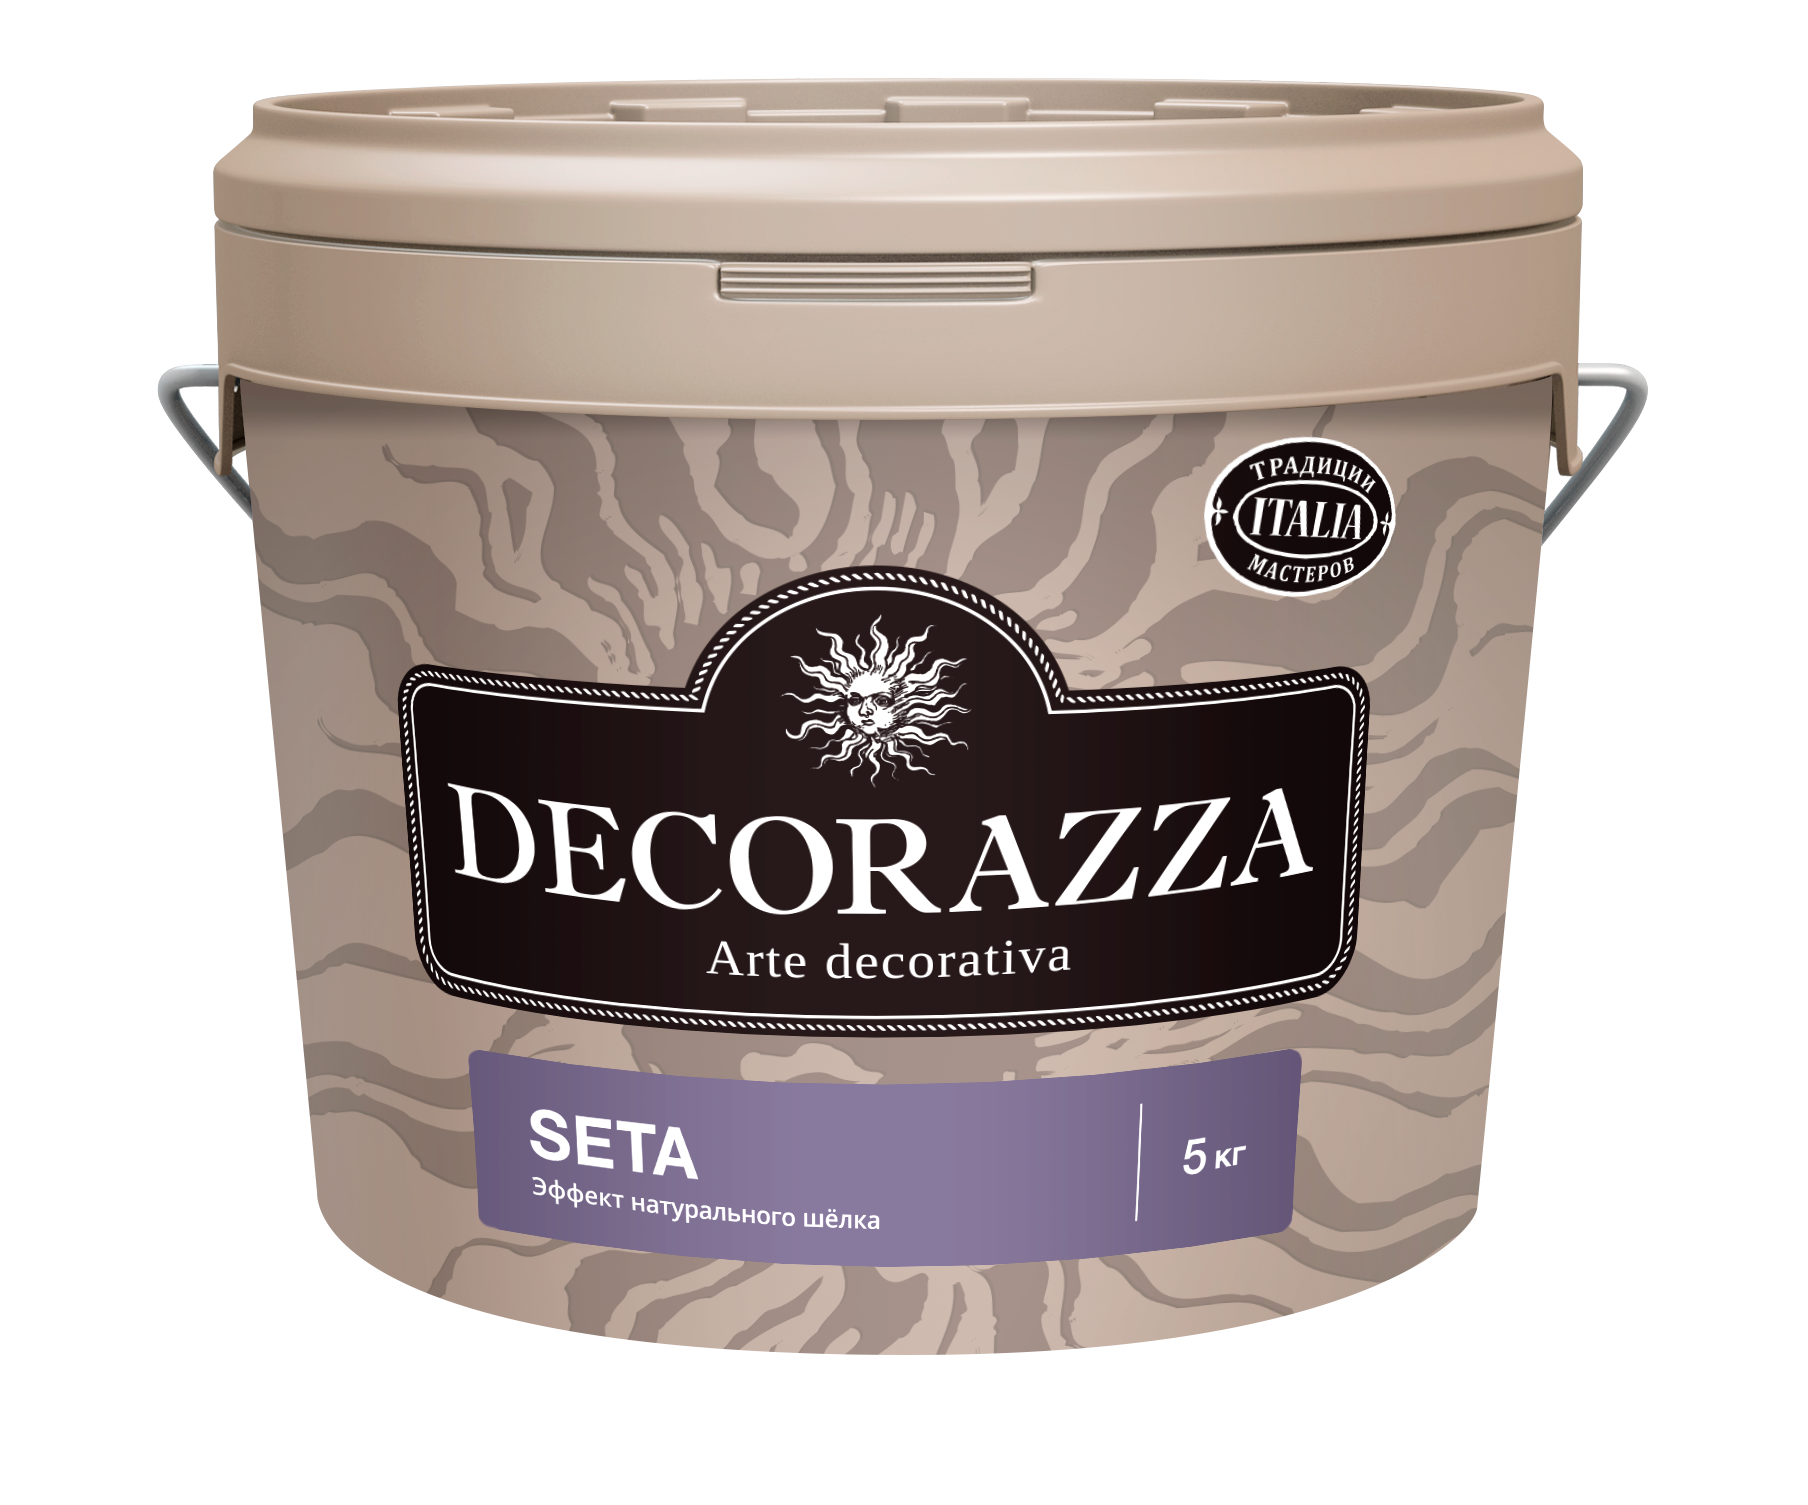 Декоративная штукатурка Decorazza Seta Argento ST 001, серебро, 5 кг краска декоративная decorazza alcantara 5 л 3 5 кг